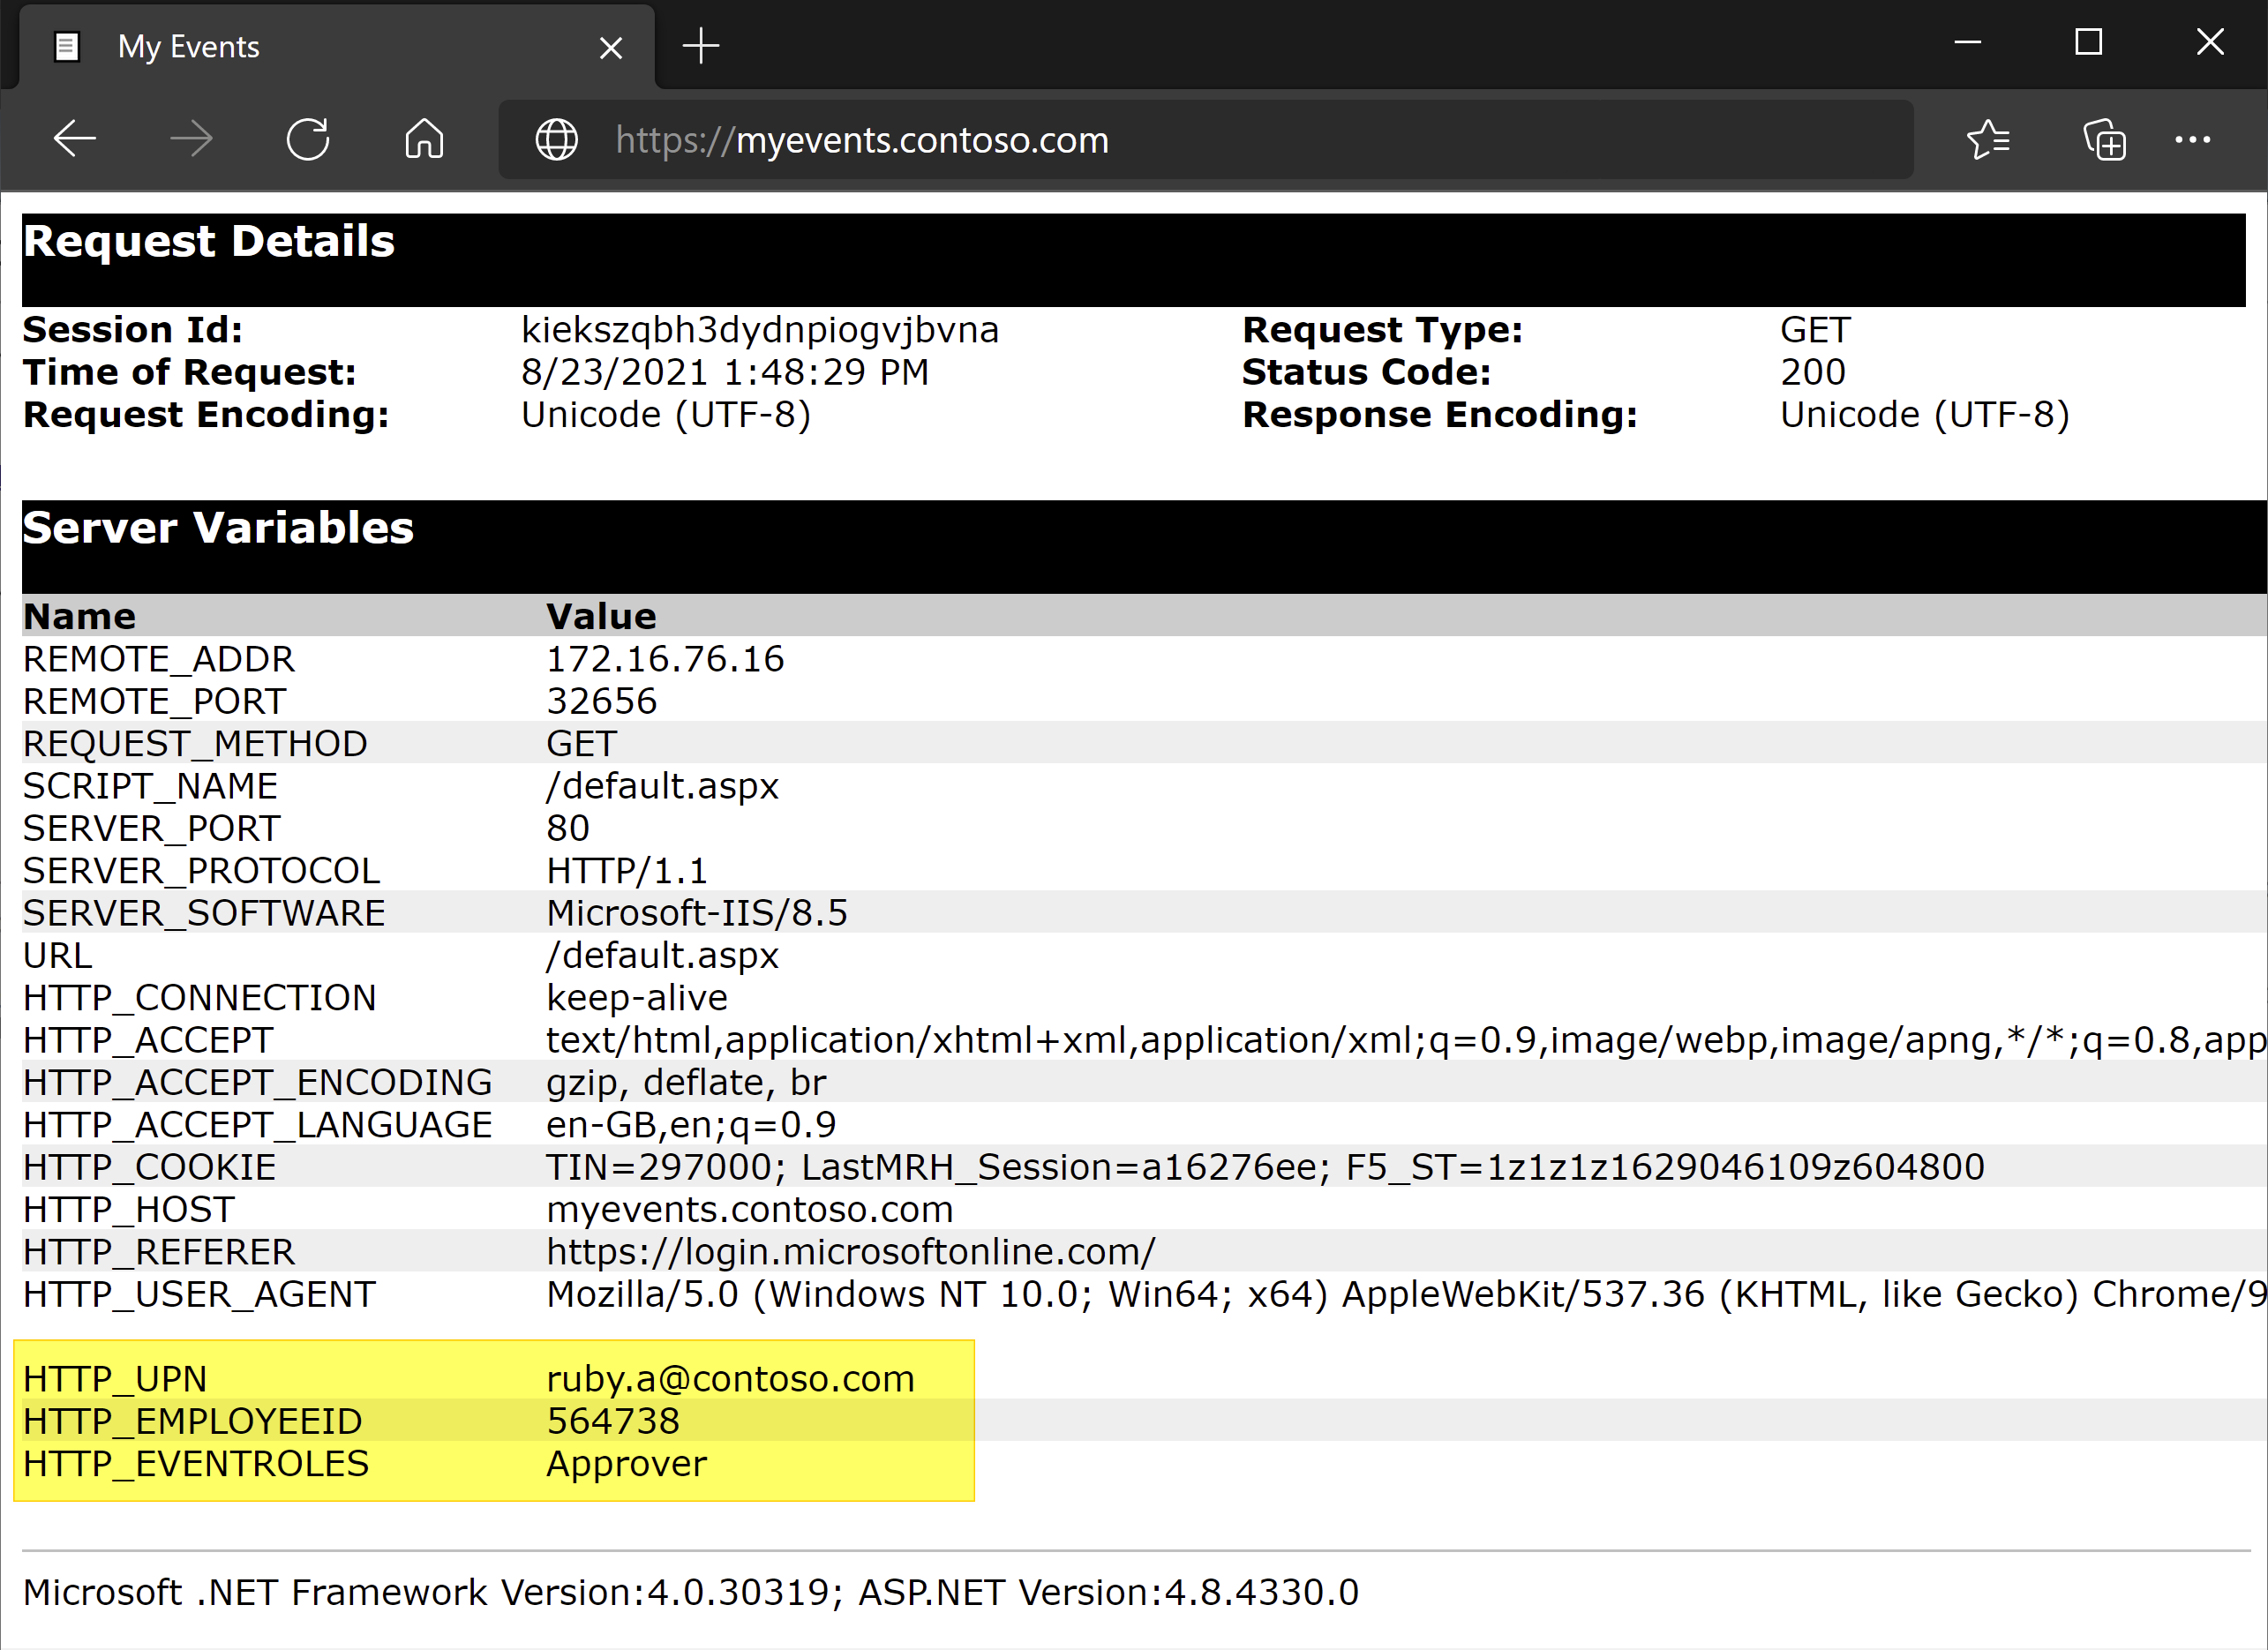 屏幕截图显示“服务器变量”下的 UPN、员工 ID 和事件角色。